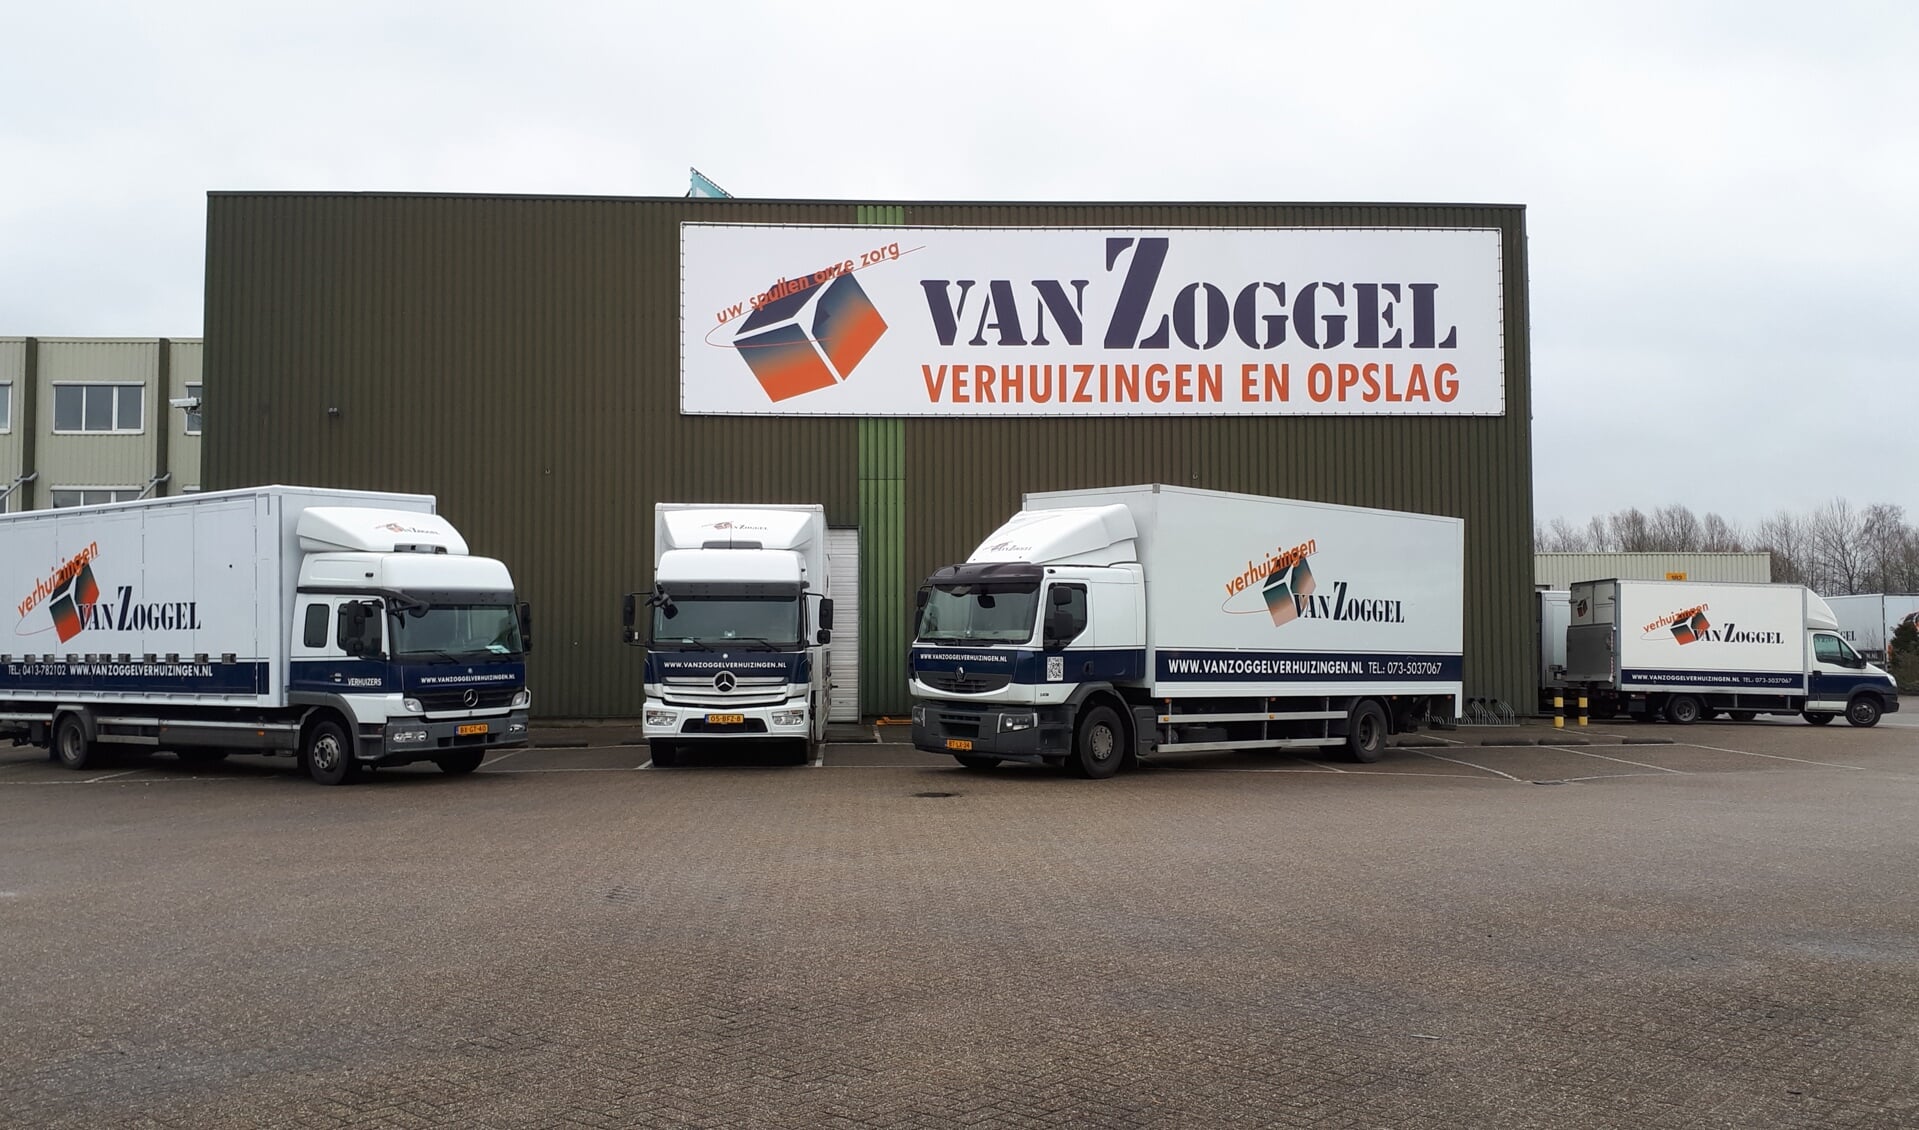 Van Zoggel Verhuizingen en Opslag is neergestreken aan de Huygensweg in Veghel. 